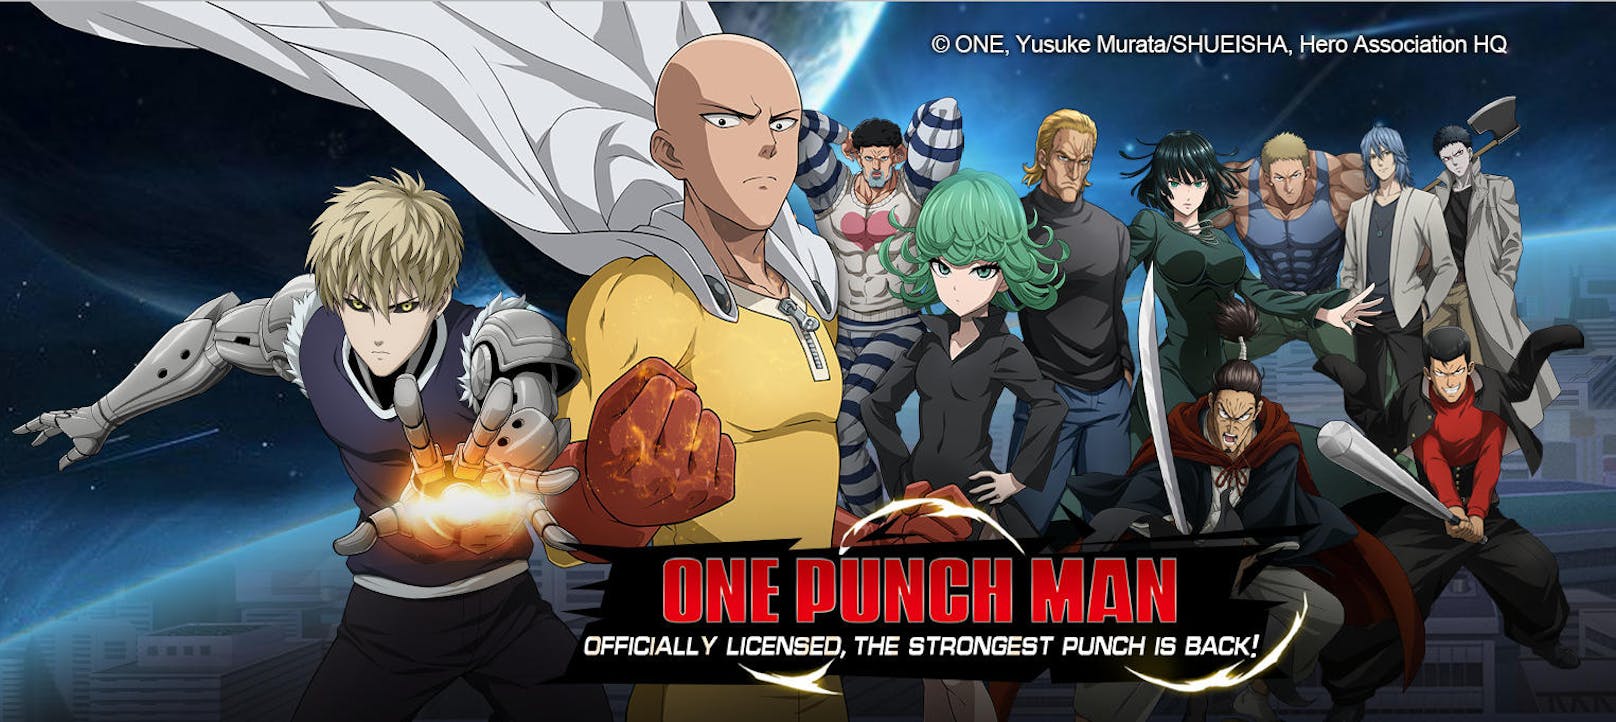 <b>19. Juni 2019:</b> One Punch Man ist eine der beliebtesten Manga- und Animeserien der letzten Jahre, die mit ihrem ungewöhnlichen Hauptcharakter Saitama die Herzen der Fans im Sturm erobert hat. Nun kündigt Oasis Games One Punch Man - Road to Hero, die offizielle Mobile-Adaption, basierend auf der Story des Anime an. Zeitgleich mit dem Launch der zweiten Staffel des Anime im Sommer, haben Fans mit One Punch Man - Road to Hero bald die Möglichkeit, Saitamas Geschichte auf mobilen Geräten selbst nachzuspielen. Die Vorabregistrierung zu One Punch Man für Android und iOS - Road to Hero ist <a href="https://mopm.oasgames.com/pre-registration/de/?sp_promote=latindv">ab sofort hier möglich.</a>